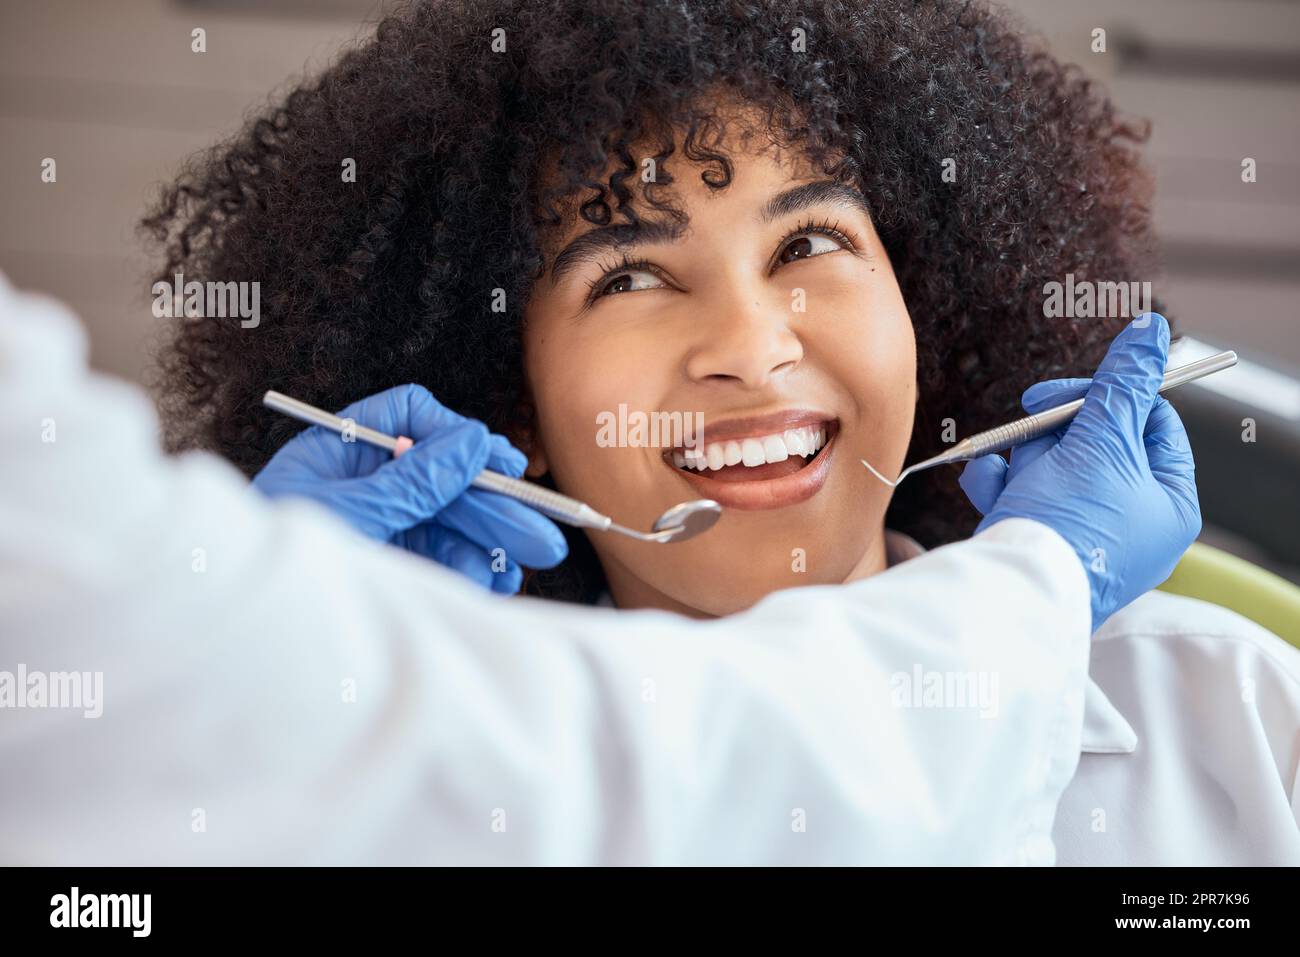 Über dem Bild einer wunderschönen jungen afroamerikanischen Frau mit einem Afro, die sich den Zahnarzt bei ihrem Zahnarzttermin ansieht. Sie muss untersucht werden, um Zahnfleischverfall und Zahnfleischerkrankungen zu verhindern. Mund- und Zahnhygiene Stockfoto